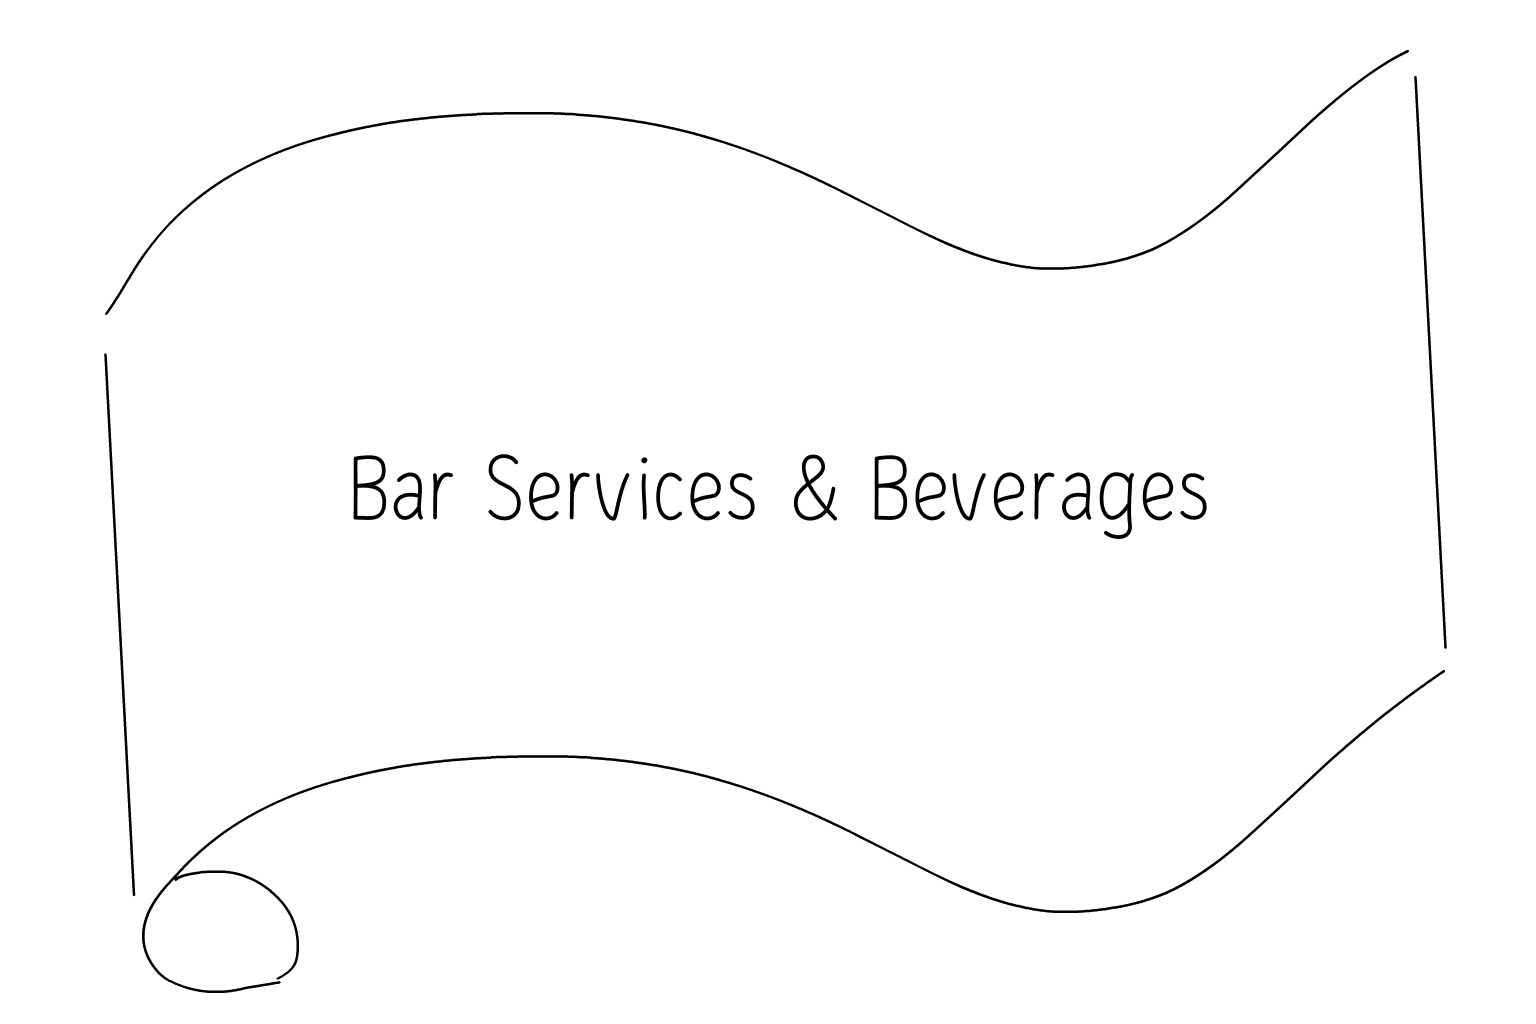 Ilustrácia služieb svadobného baru a nápojov